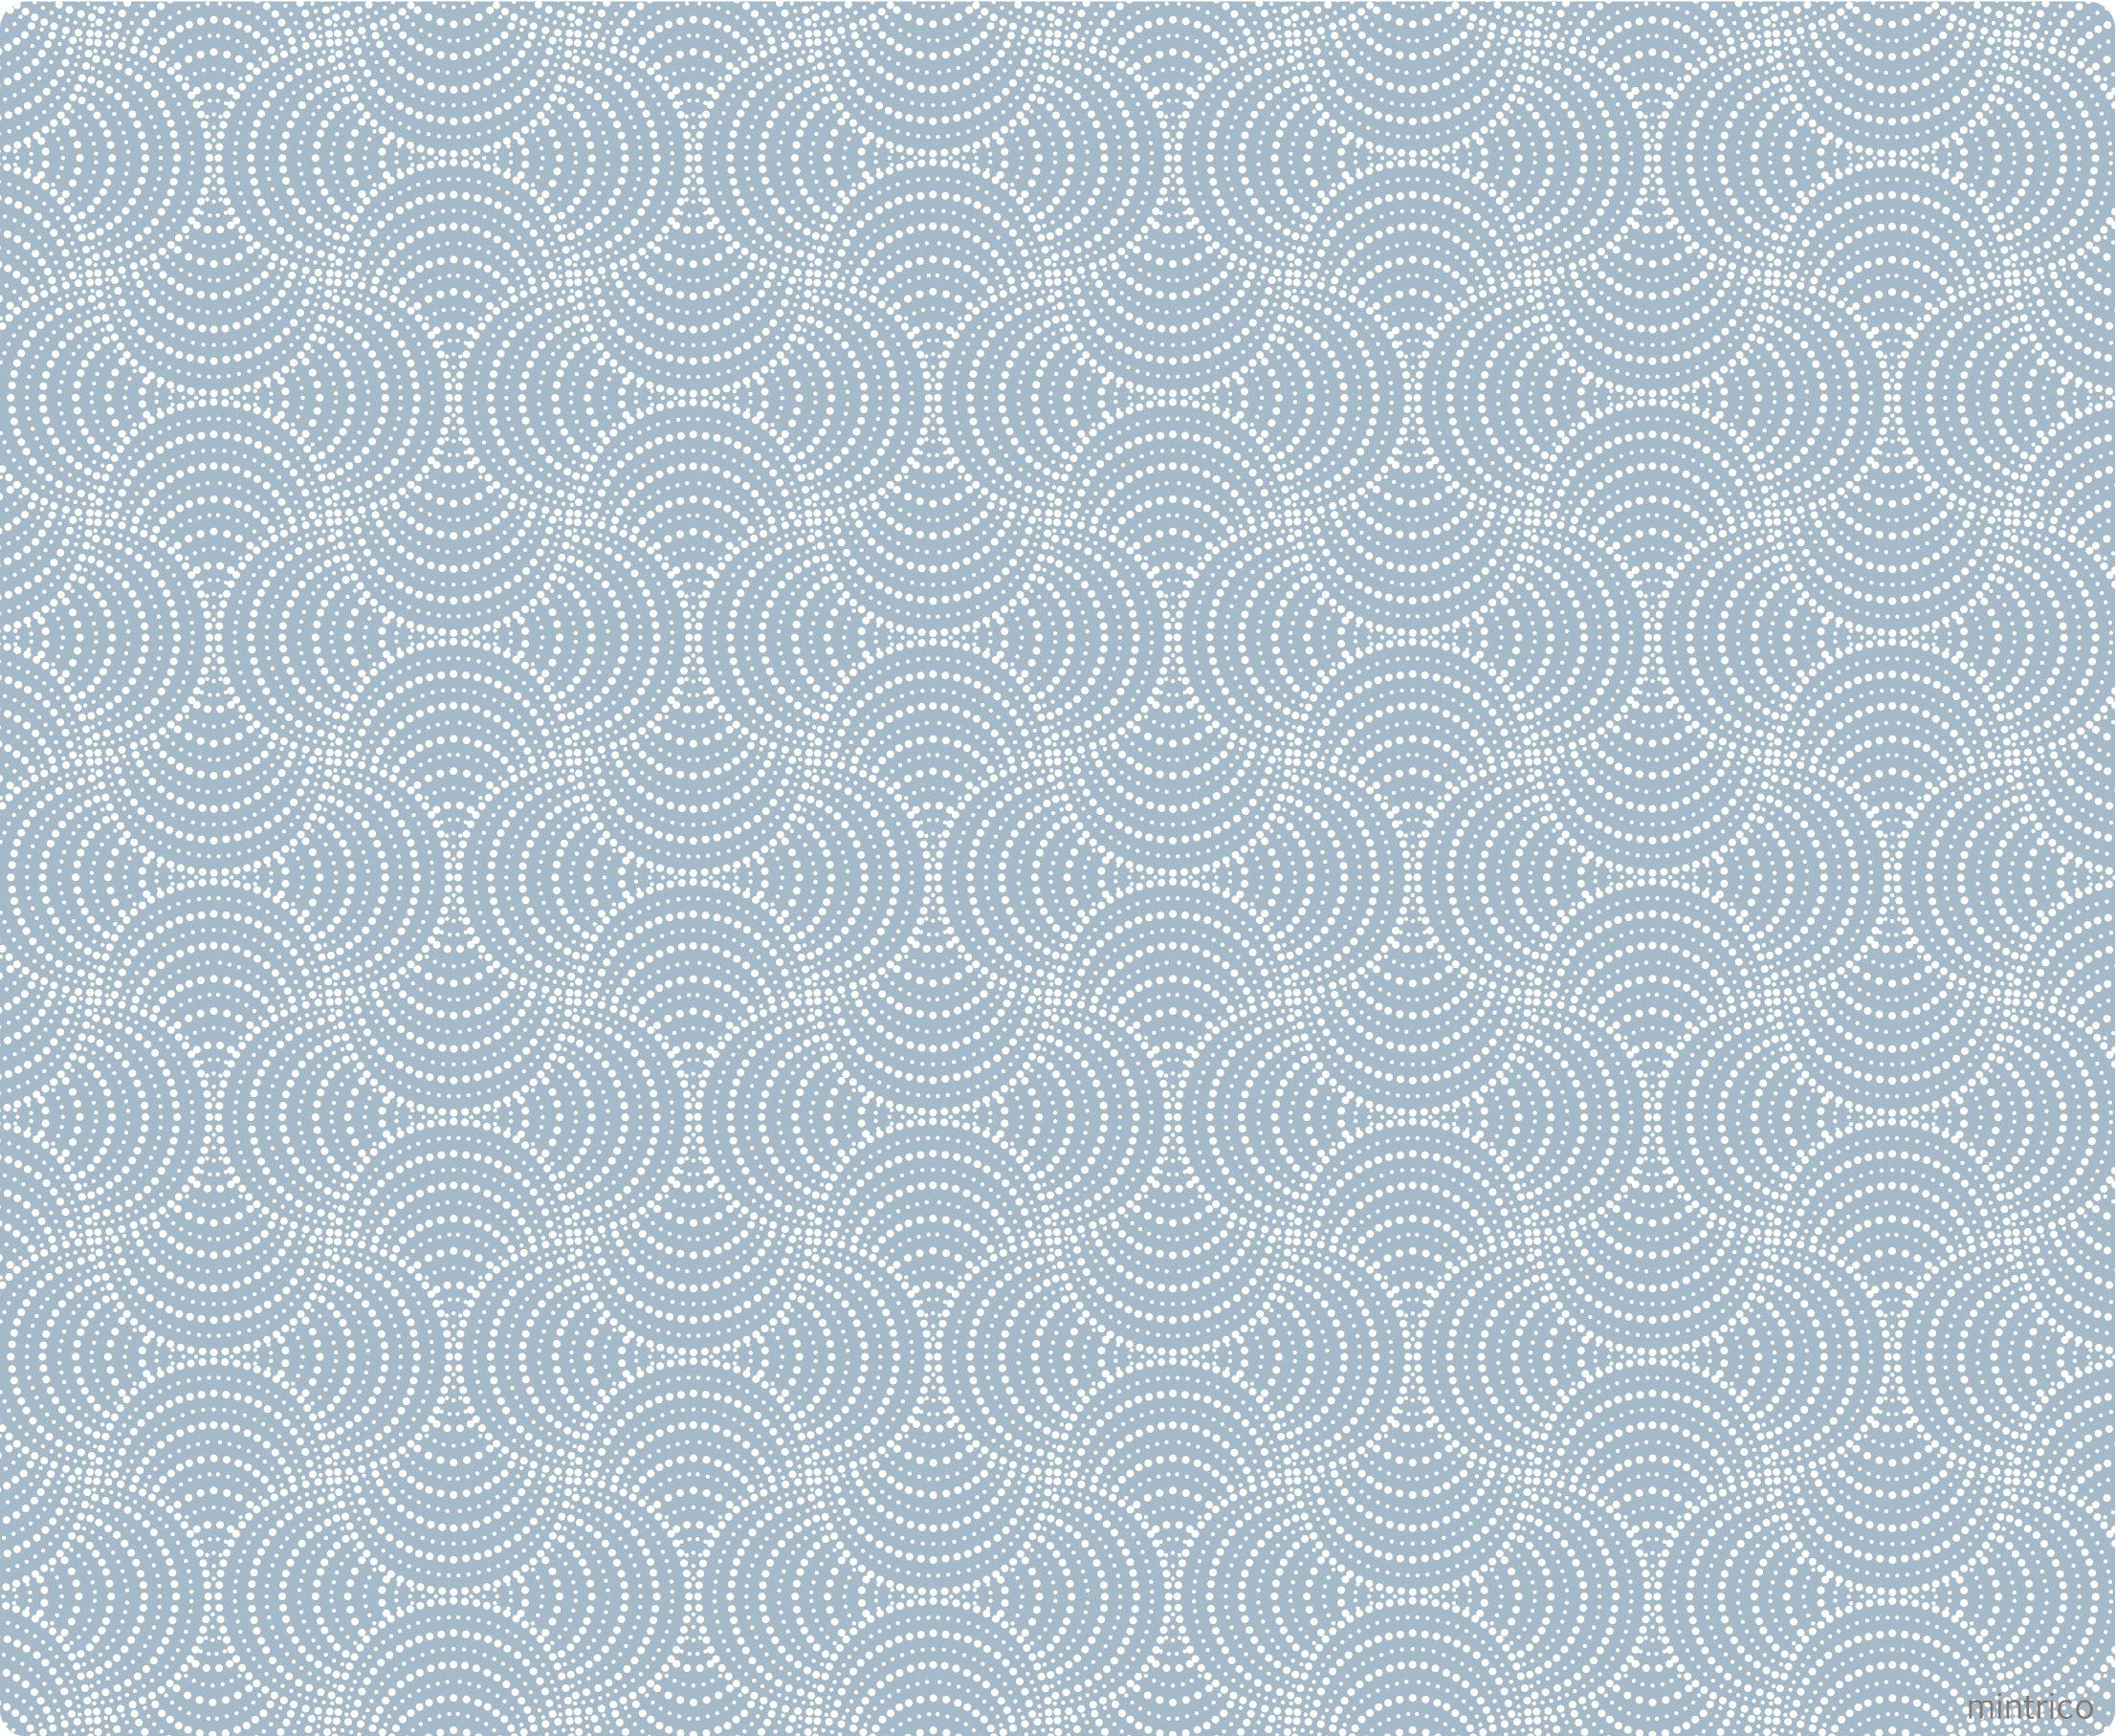 Blue and white dot swirly pattern